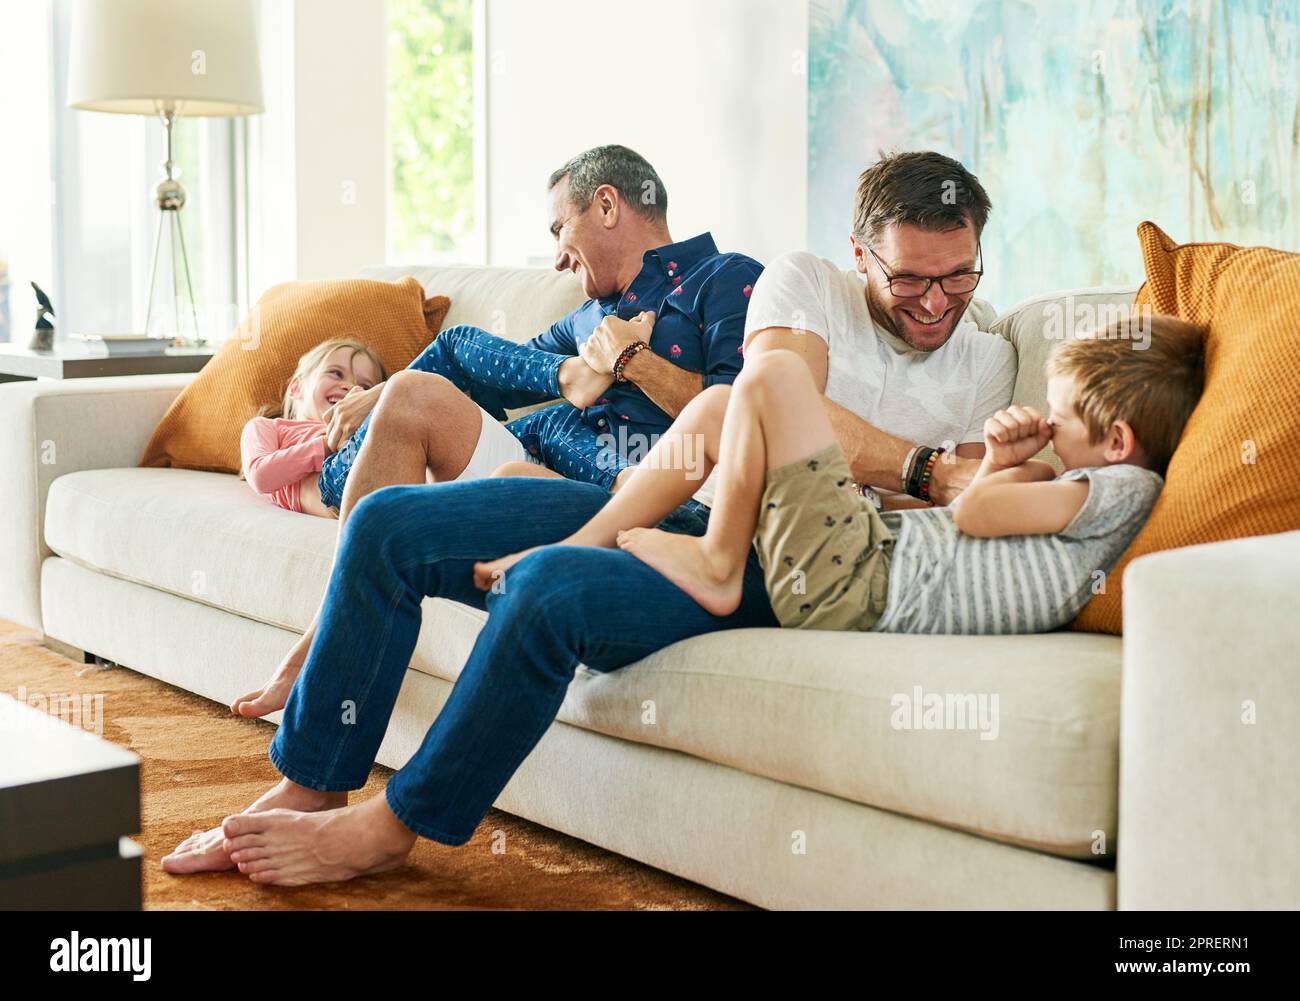 Ottenere la loro dose giornaliera di sollini. Scatto integrale di una famiglia affettuosa di quattro persone sul divano di casa. Foto Stock